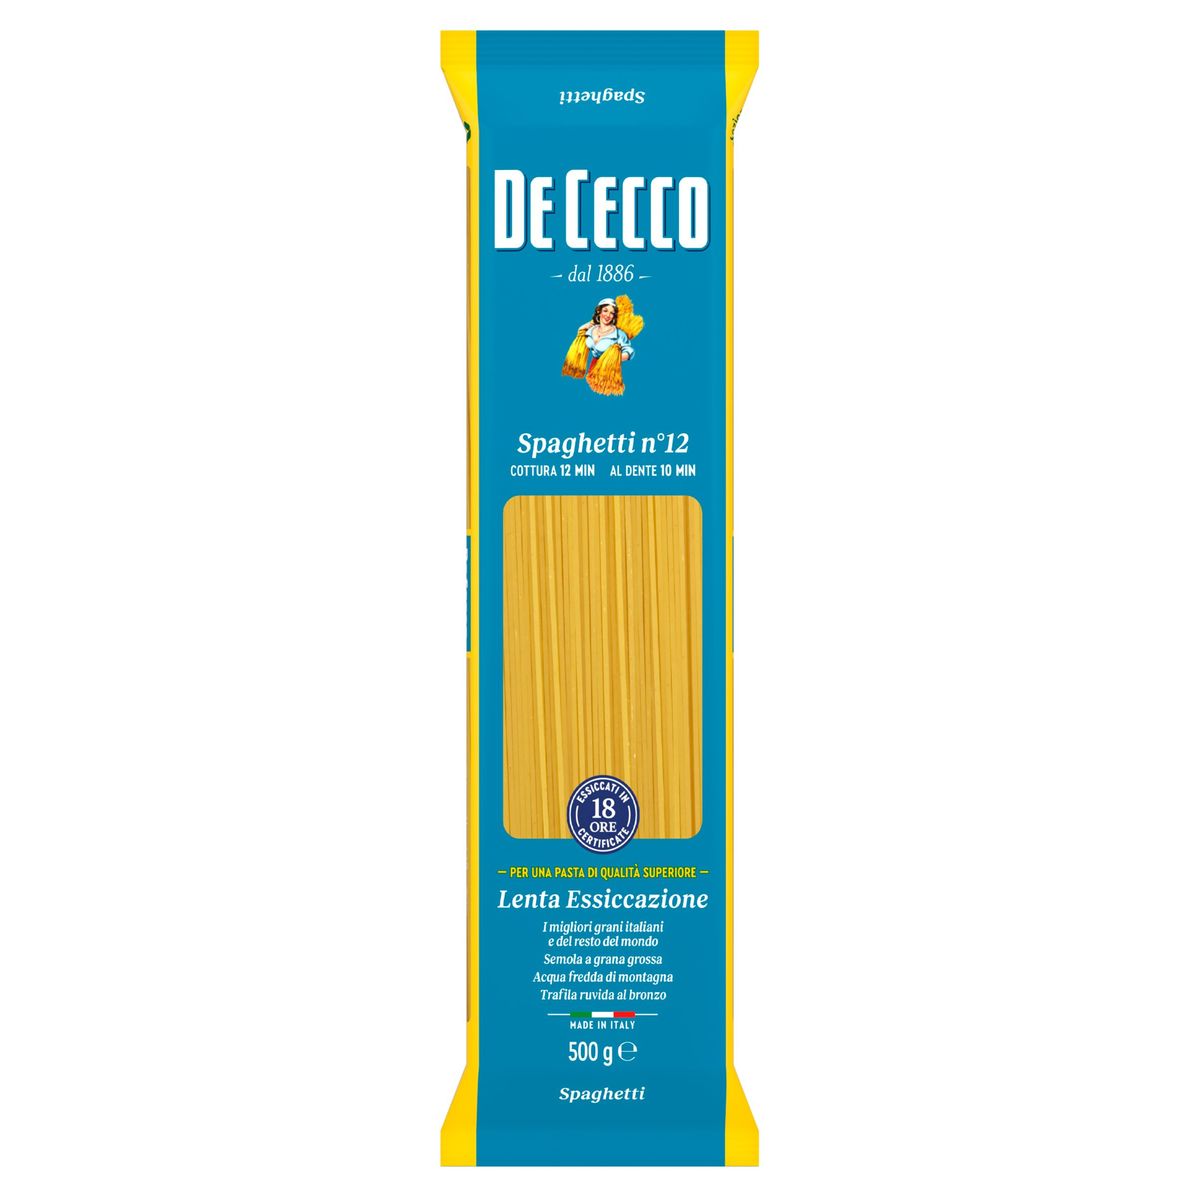 De Cecco Spaghetti n°12 500 g